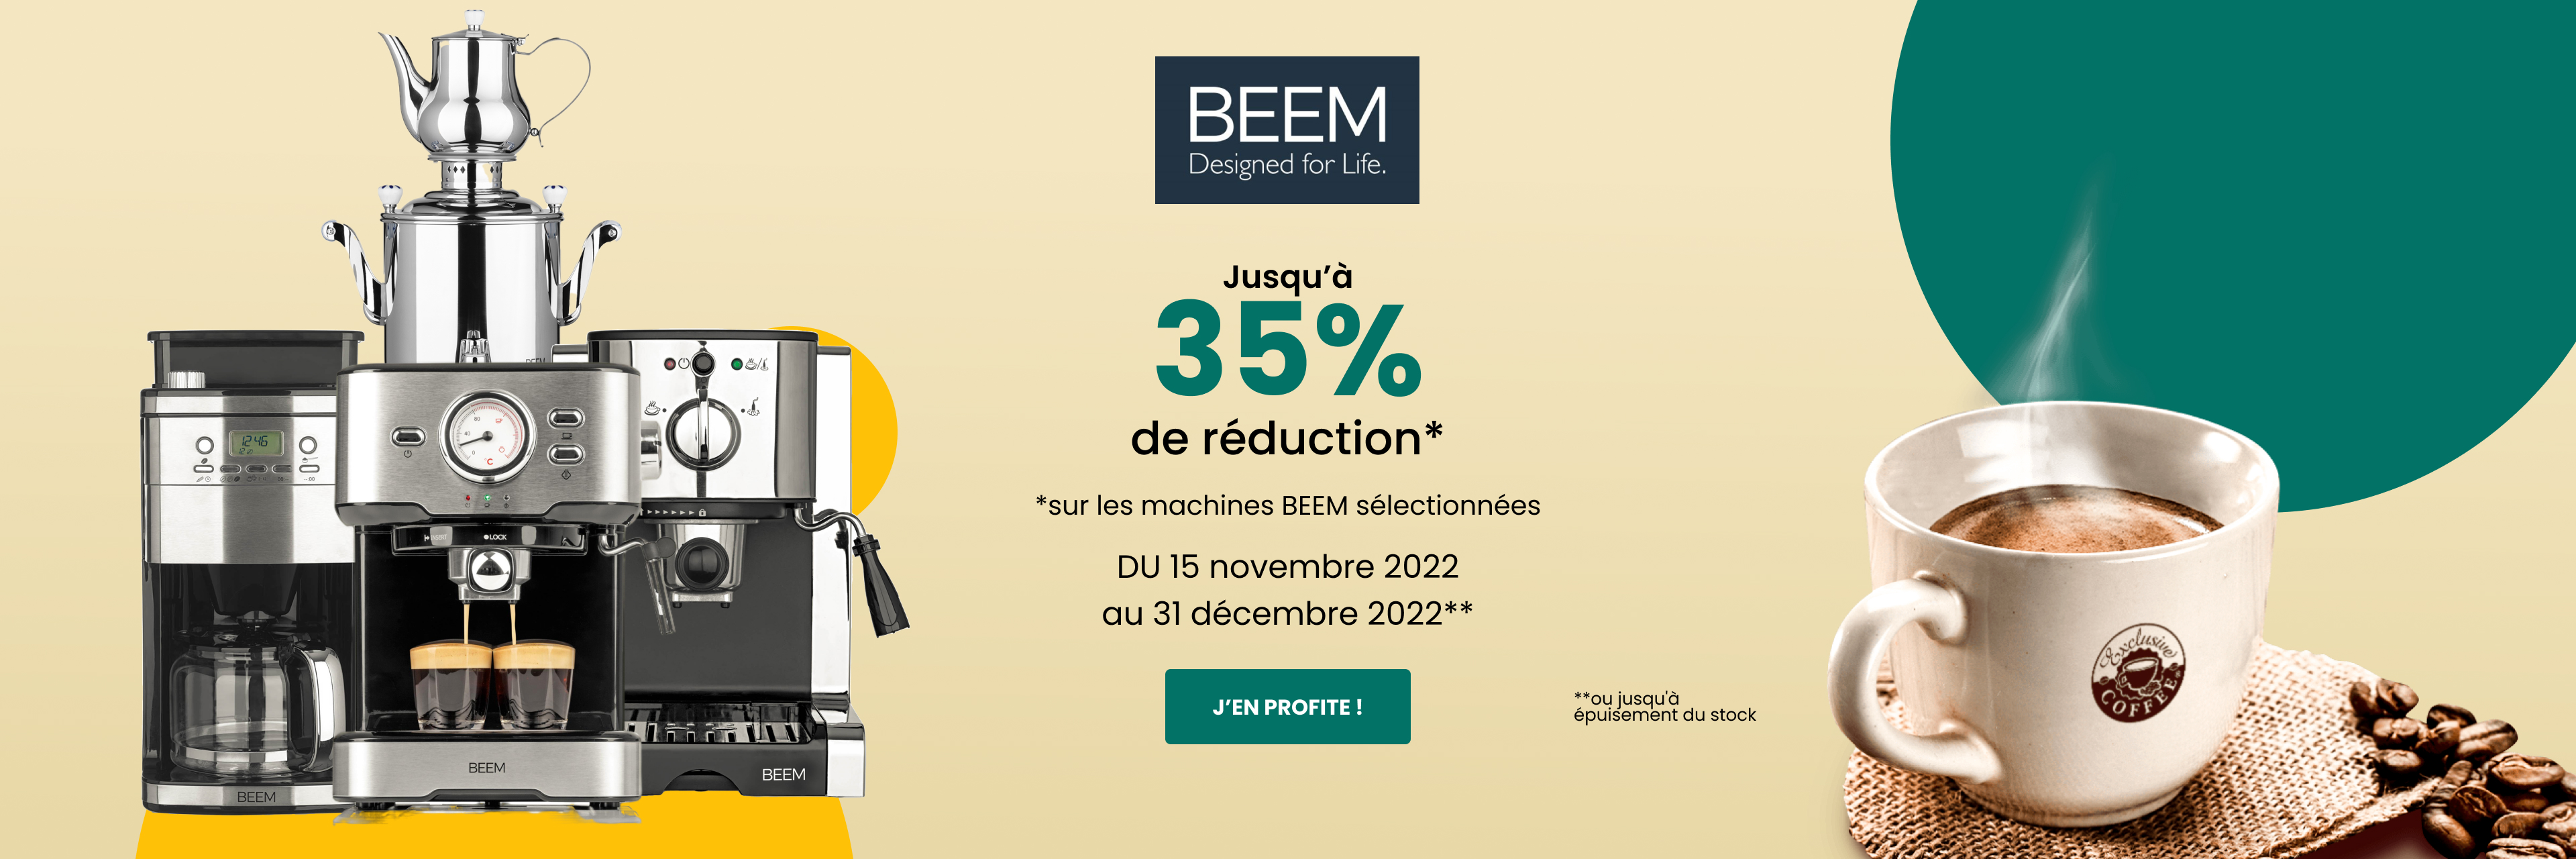 Jusqu’à 35% de réduction sur les machines BEEM sélectionnées